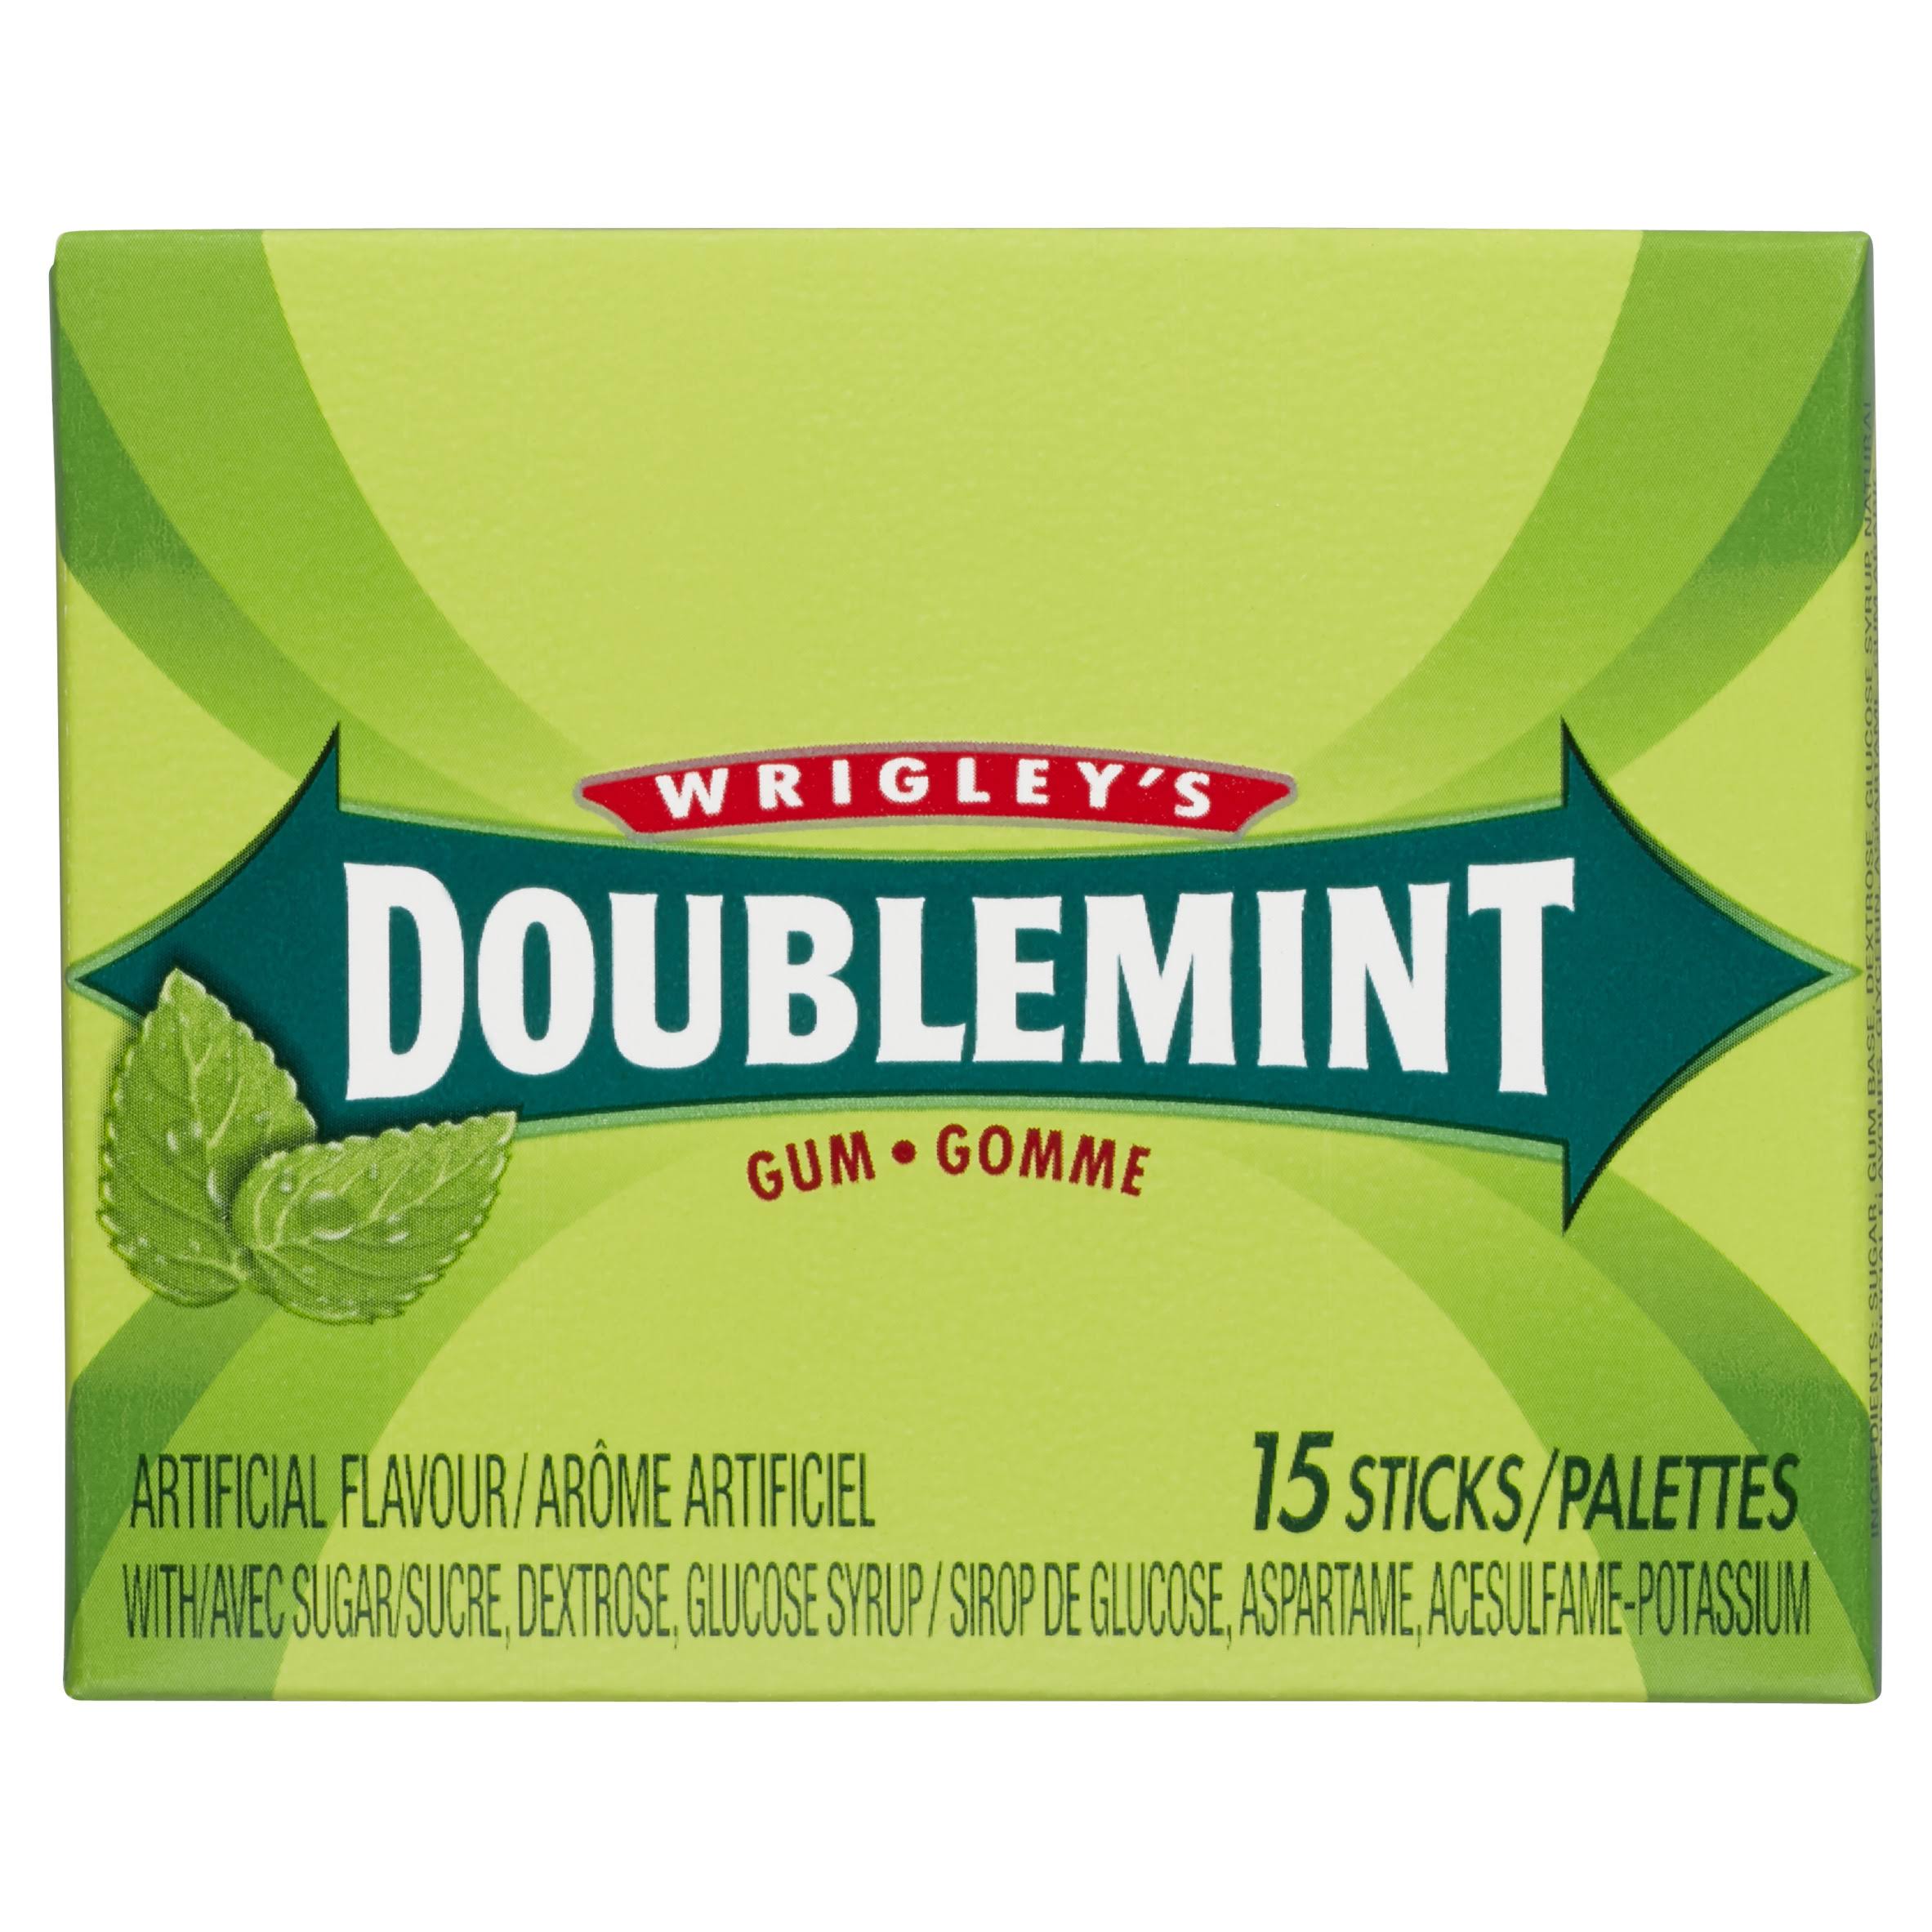 Wrigley's Doublemint Gum - 15 Sticks